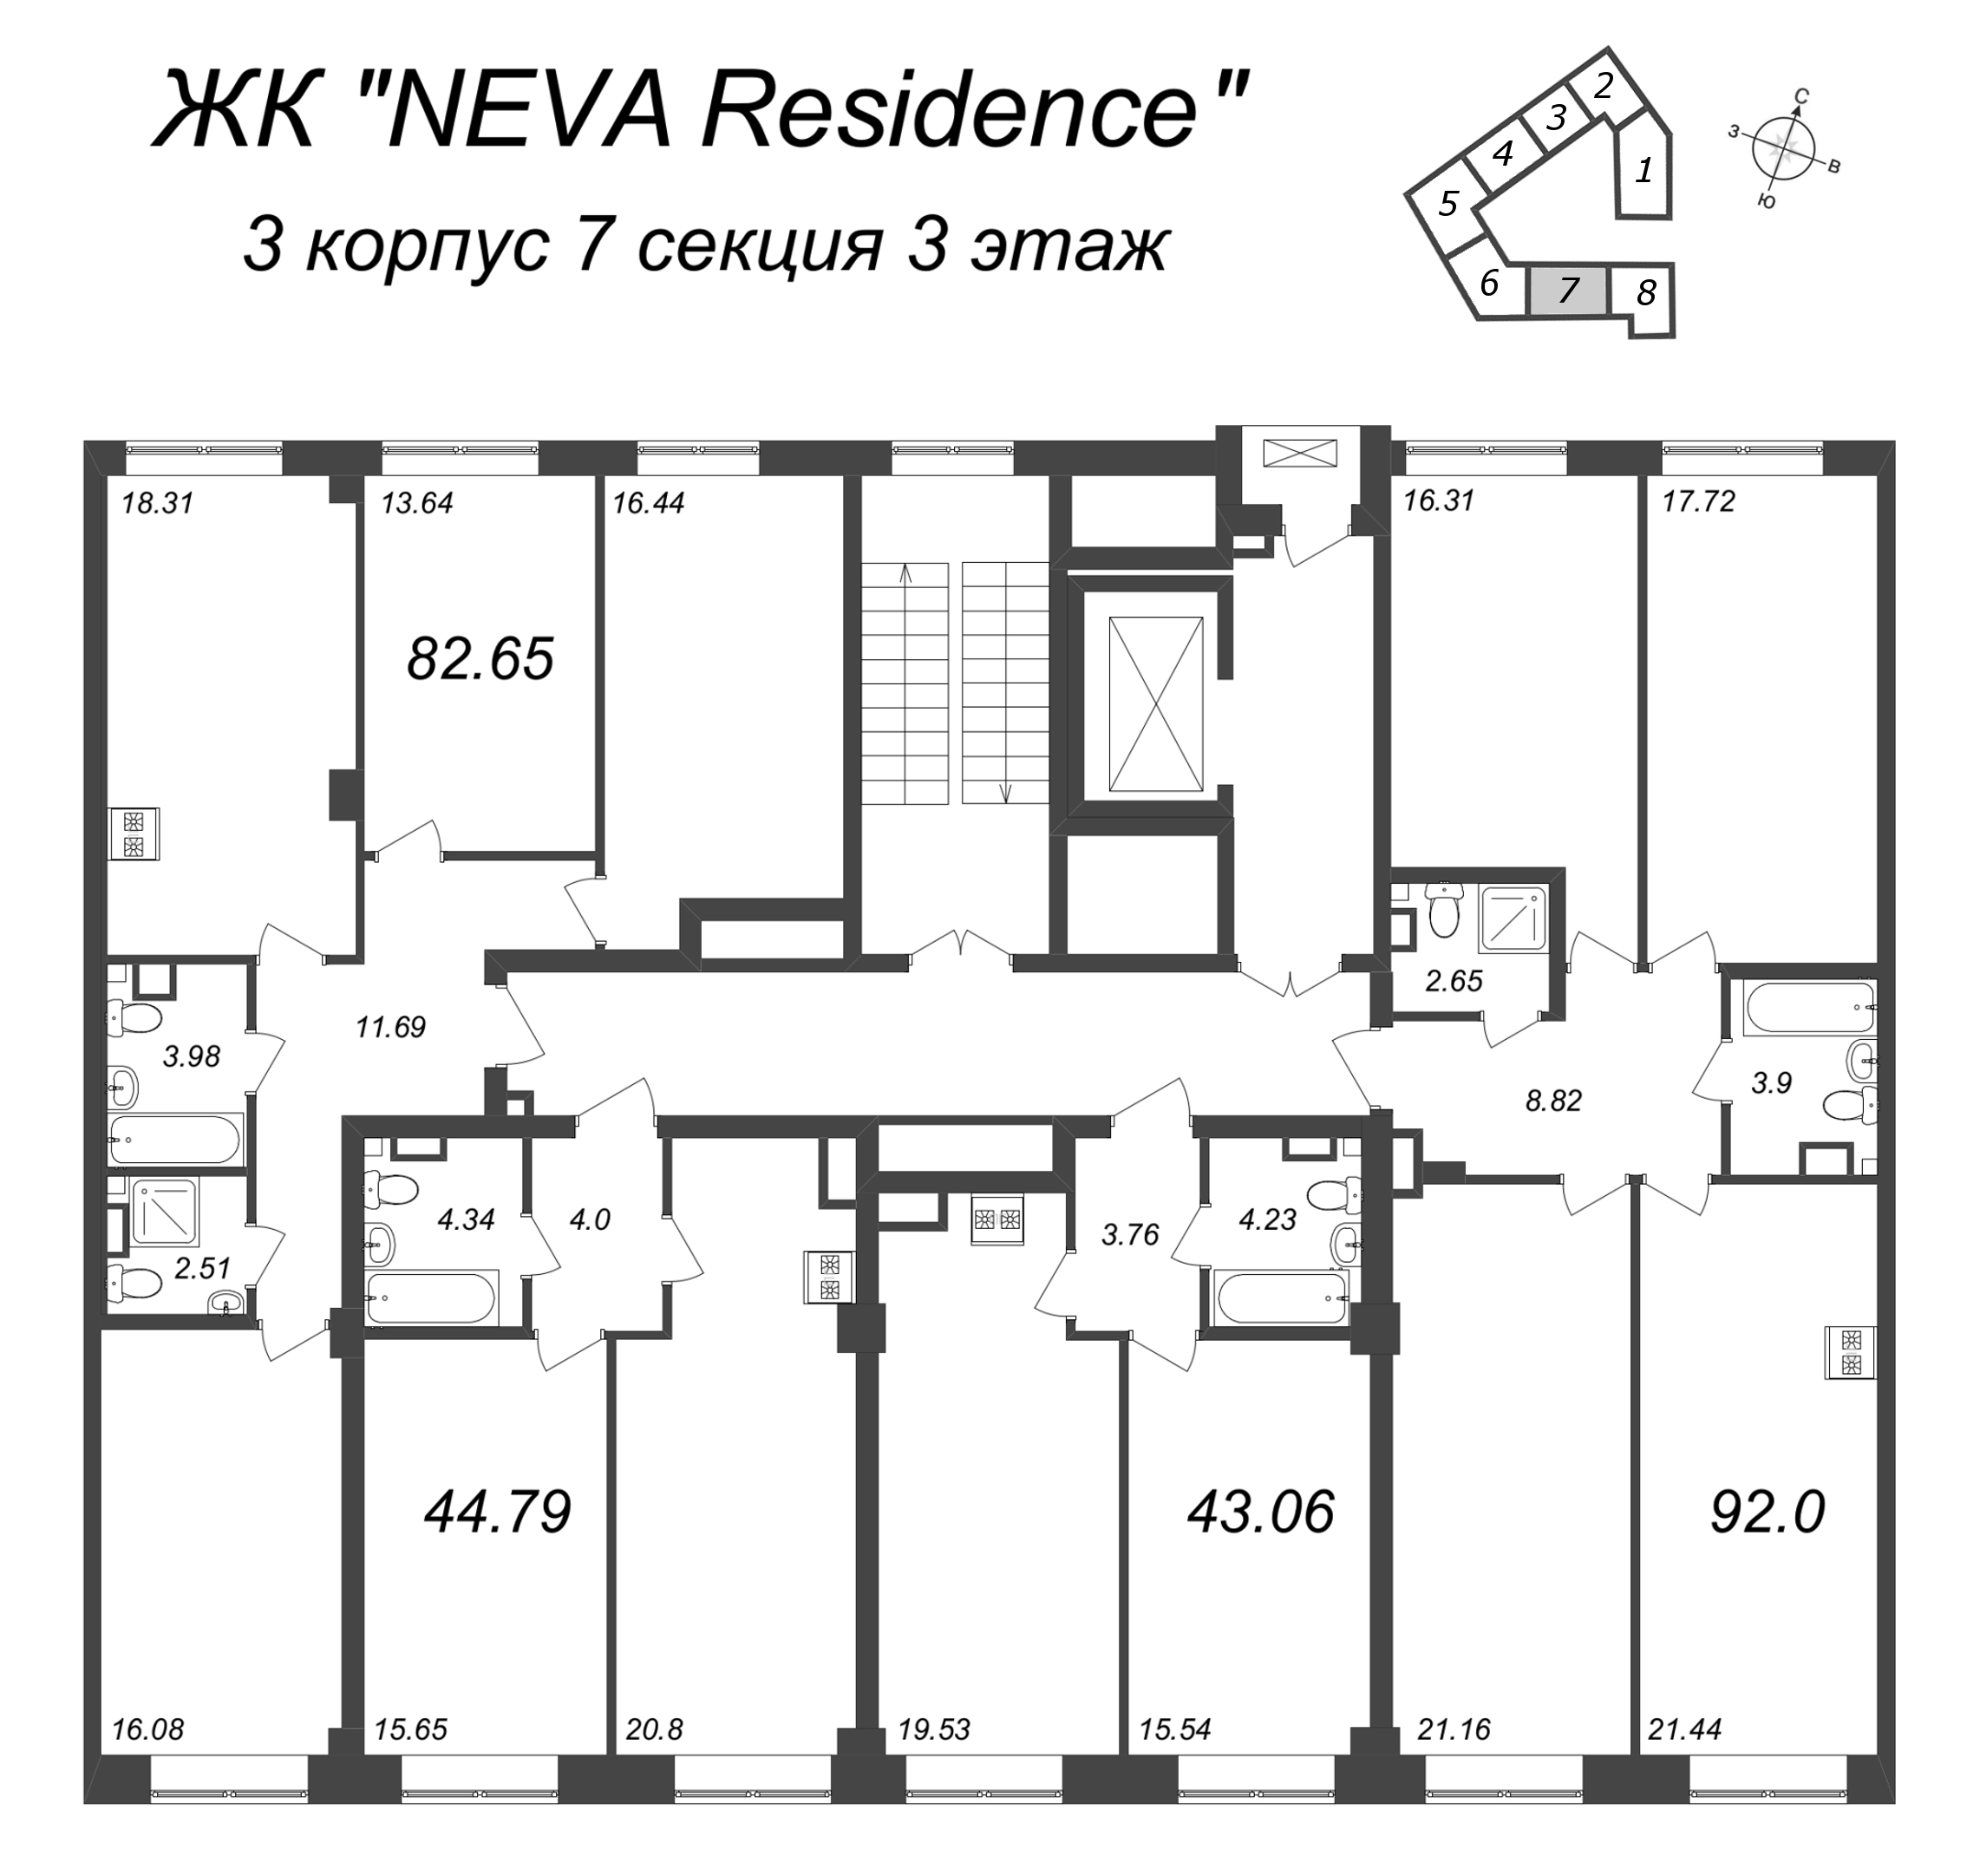 4-комнатная (Евро) квартира, 92 м² в ЖК "Neva Residence" - планировка этажа